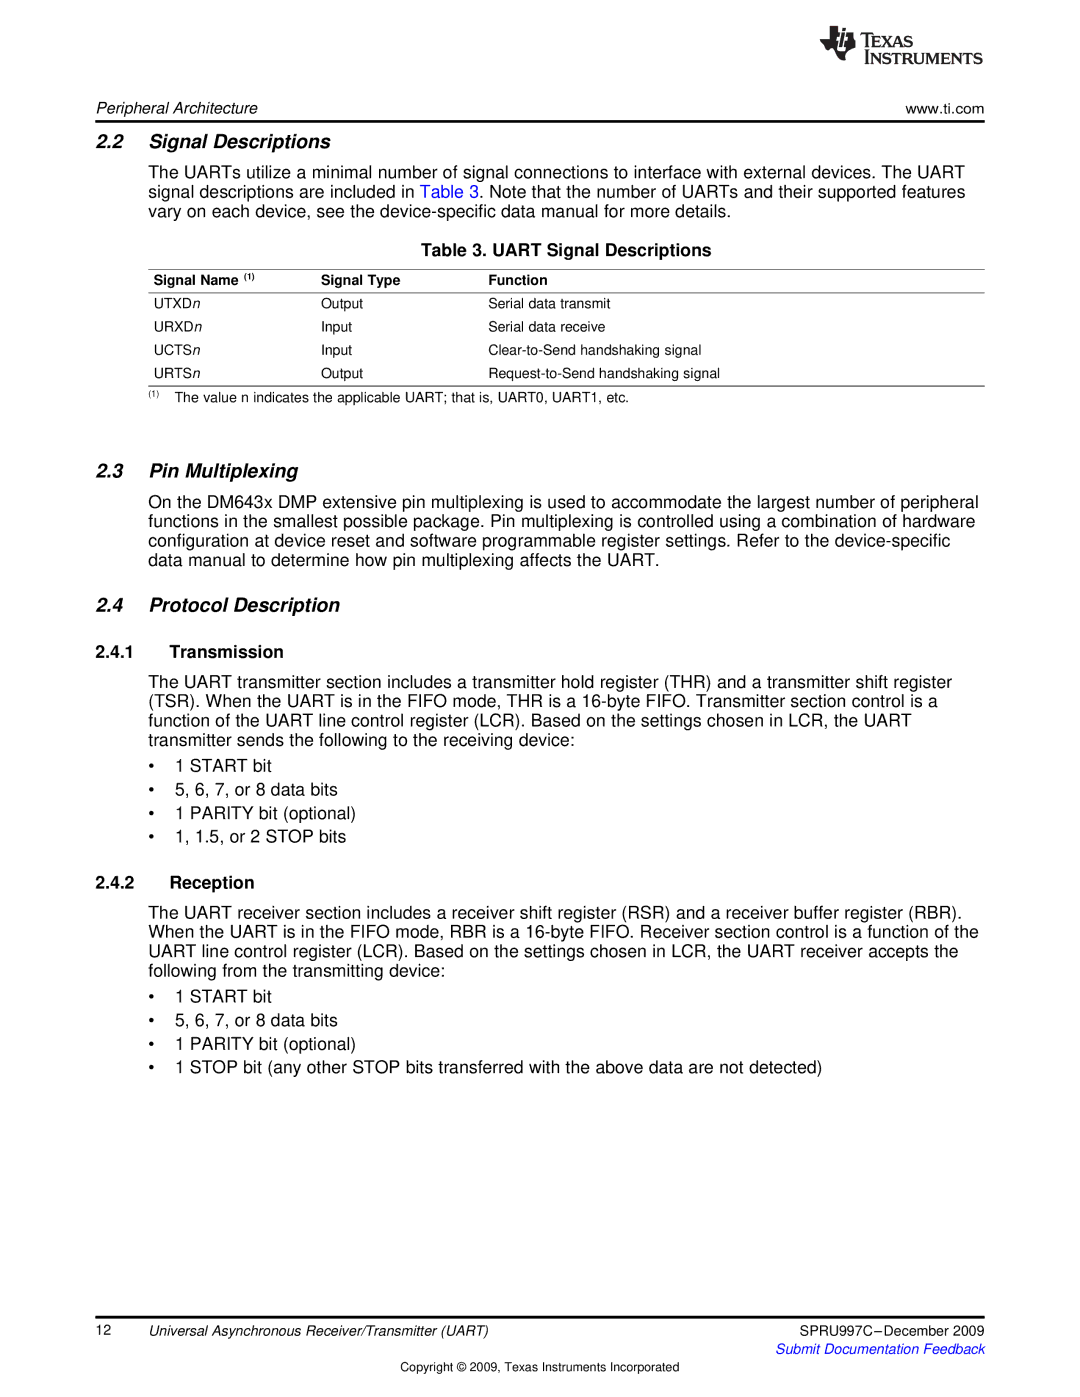 Texas Instruments TMS320DM643X DMP manual Signal Descriptions, Pin Multiplexing, Protocol Description 